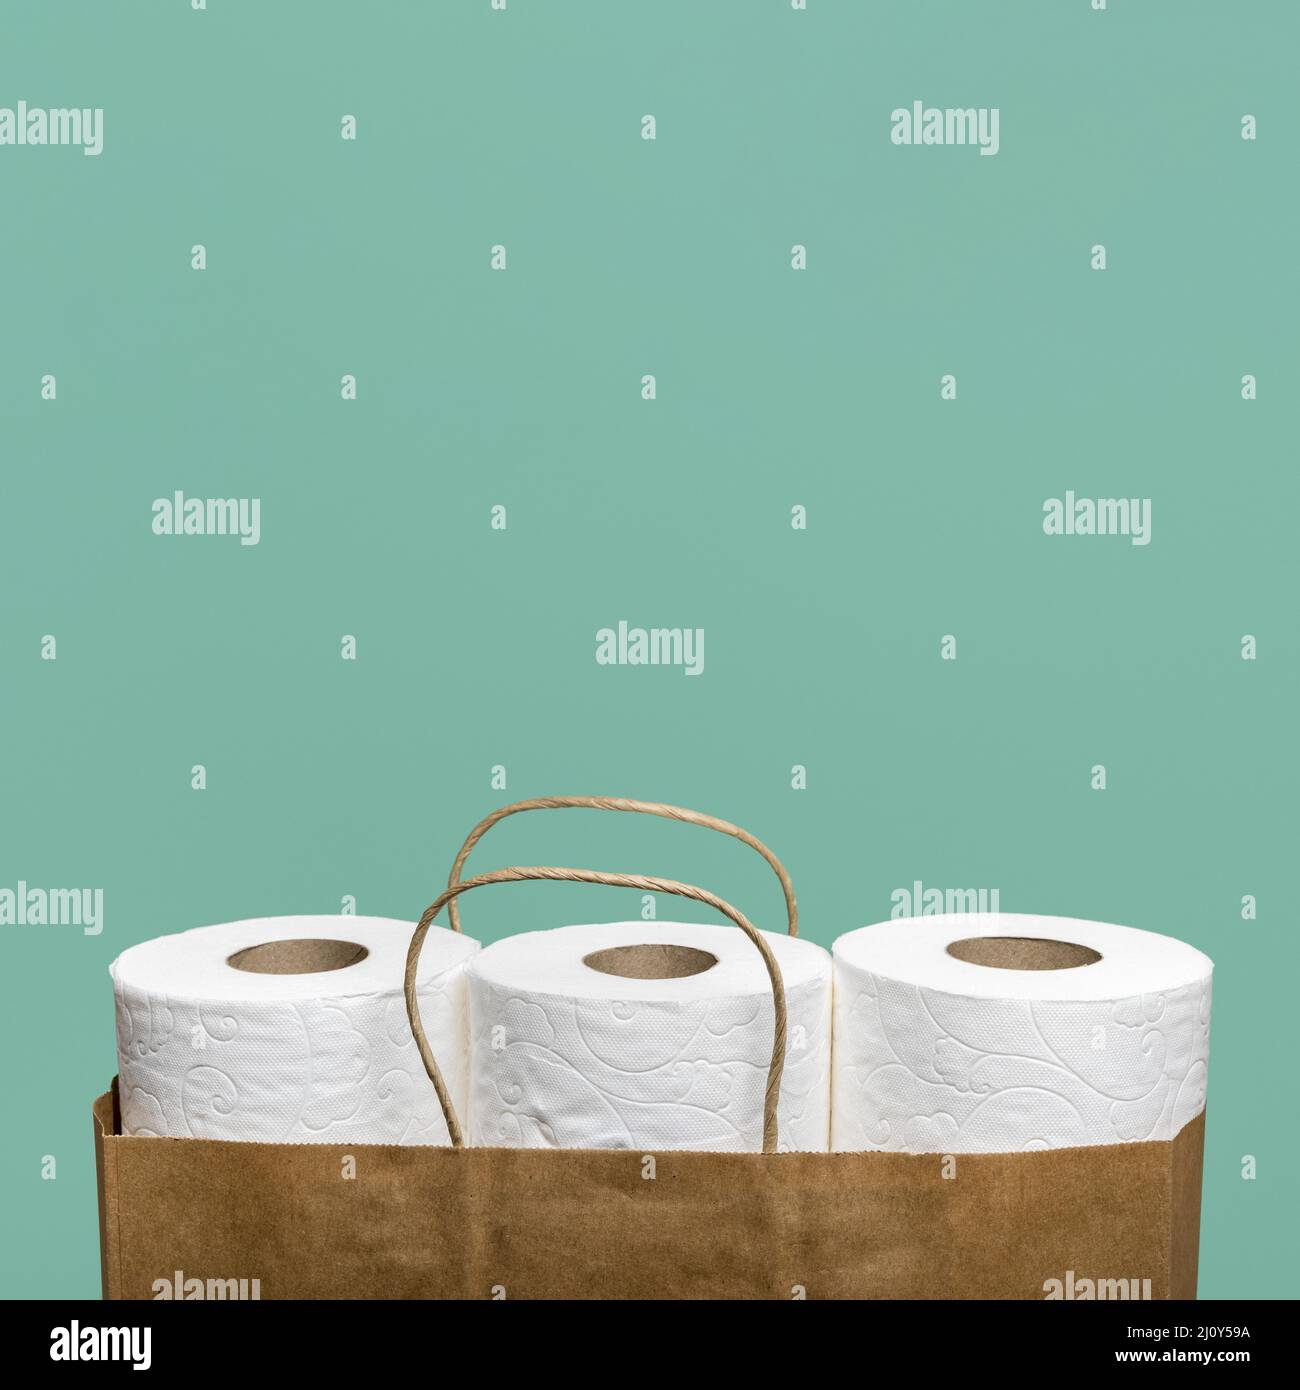 Vue avant trois rouleaux de papier toilette sac de papier. Photo de haute qualité Banque D'Images